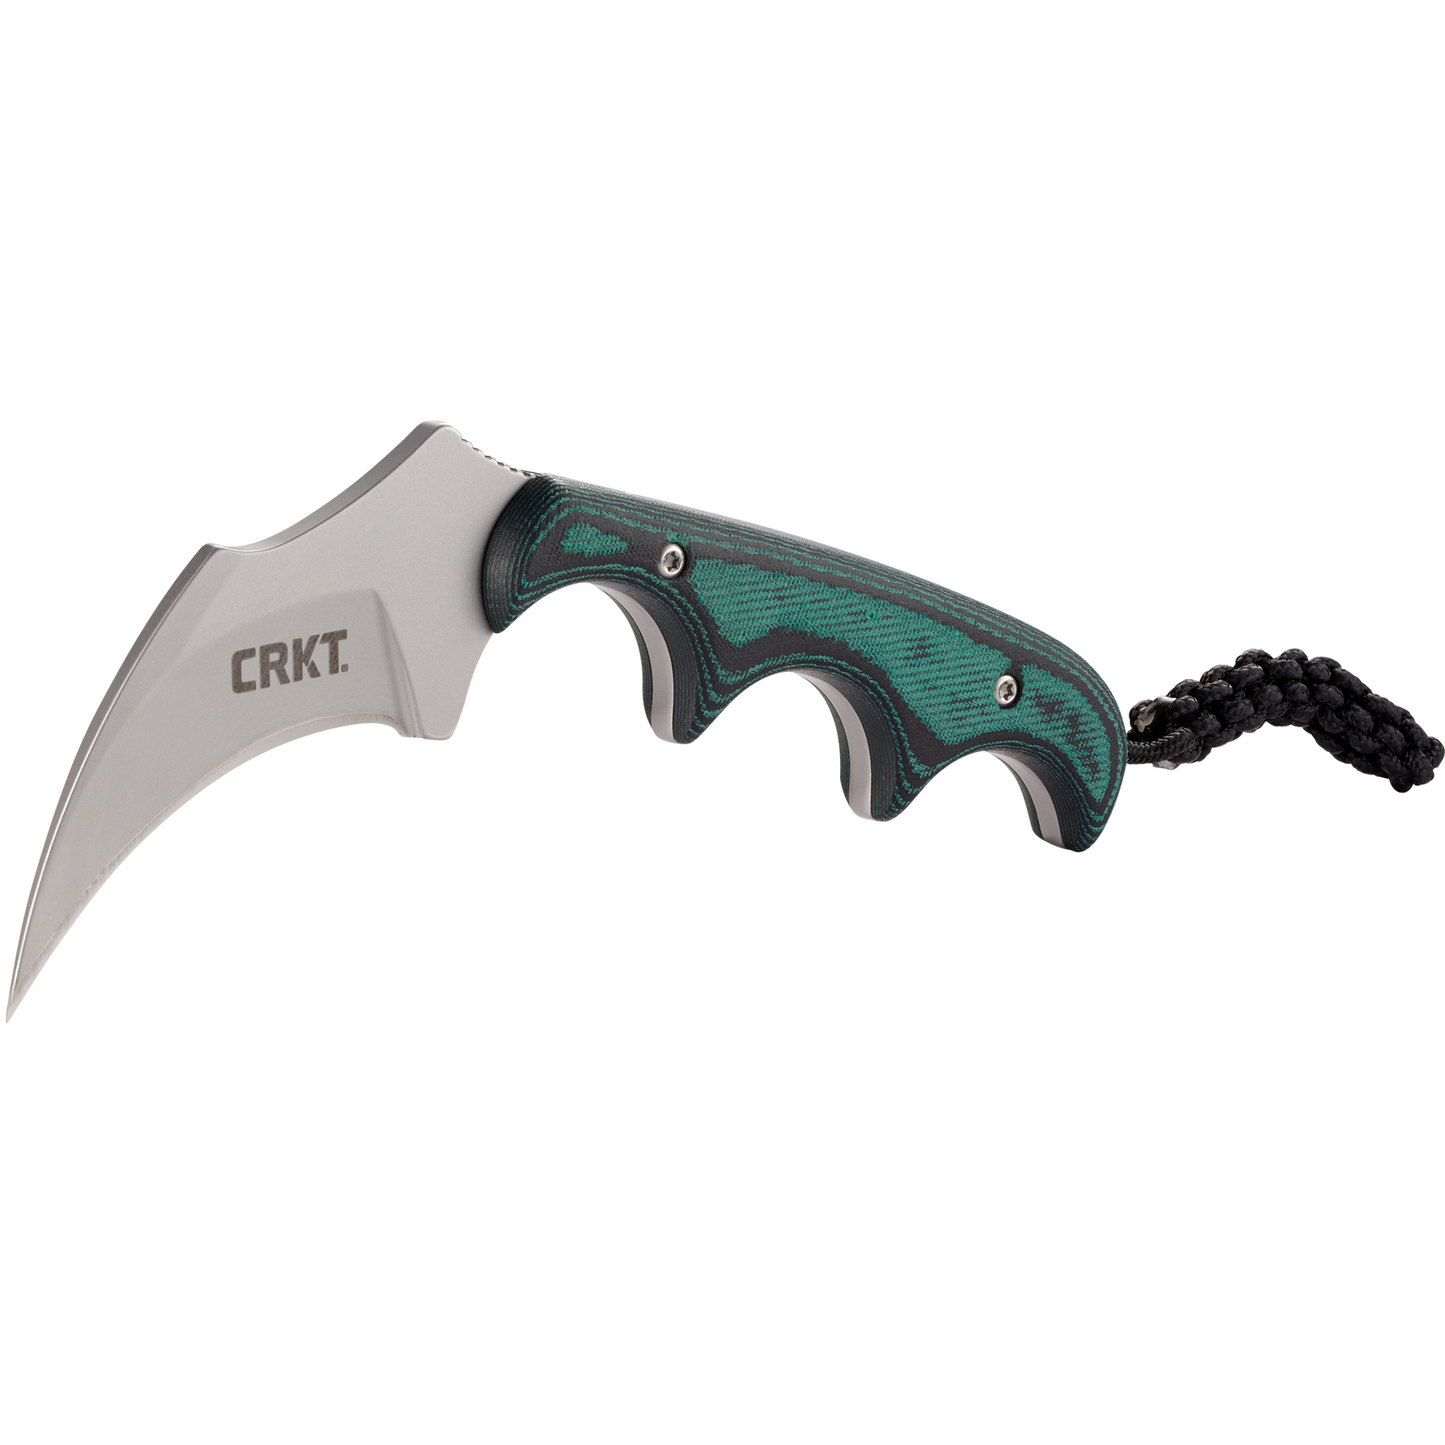 CRKT Folts Minimalist Keramin Fixed Blade Knife - Alan Folts Design - 2389